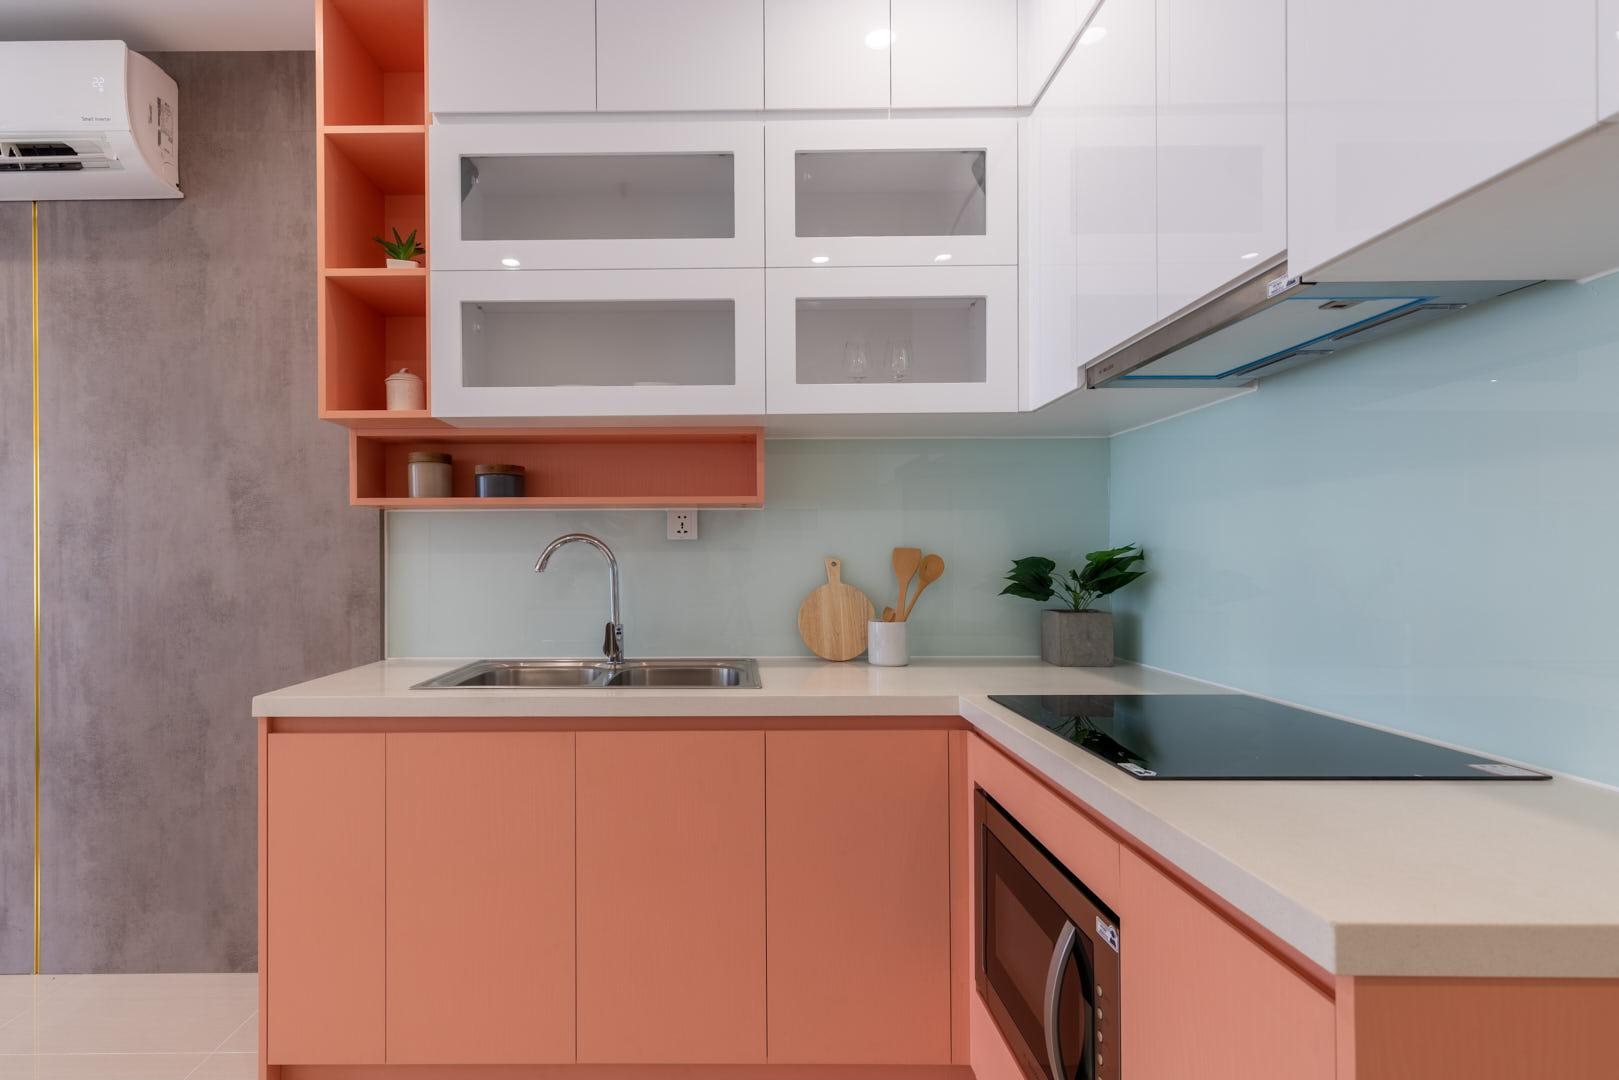 Nội thất bếp được thiết kế âm như bếp từ, lò nướng - lò vi sóng… giúp cho nhà bếp trở nên sang trọng và hiện đại